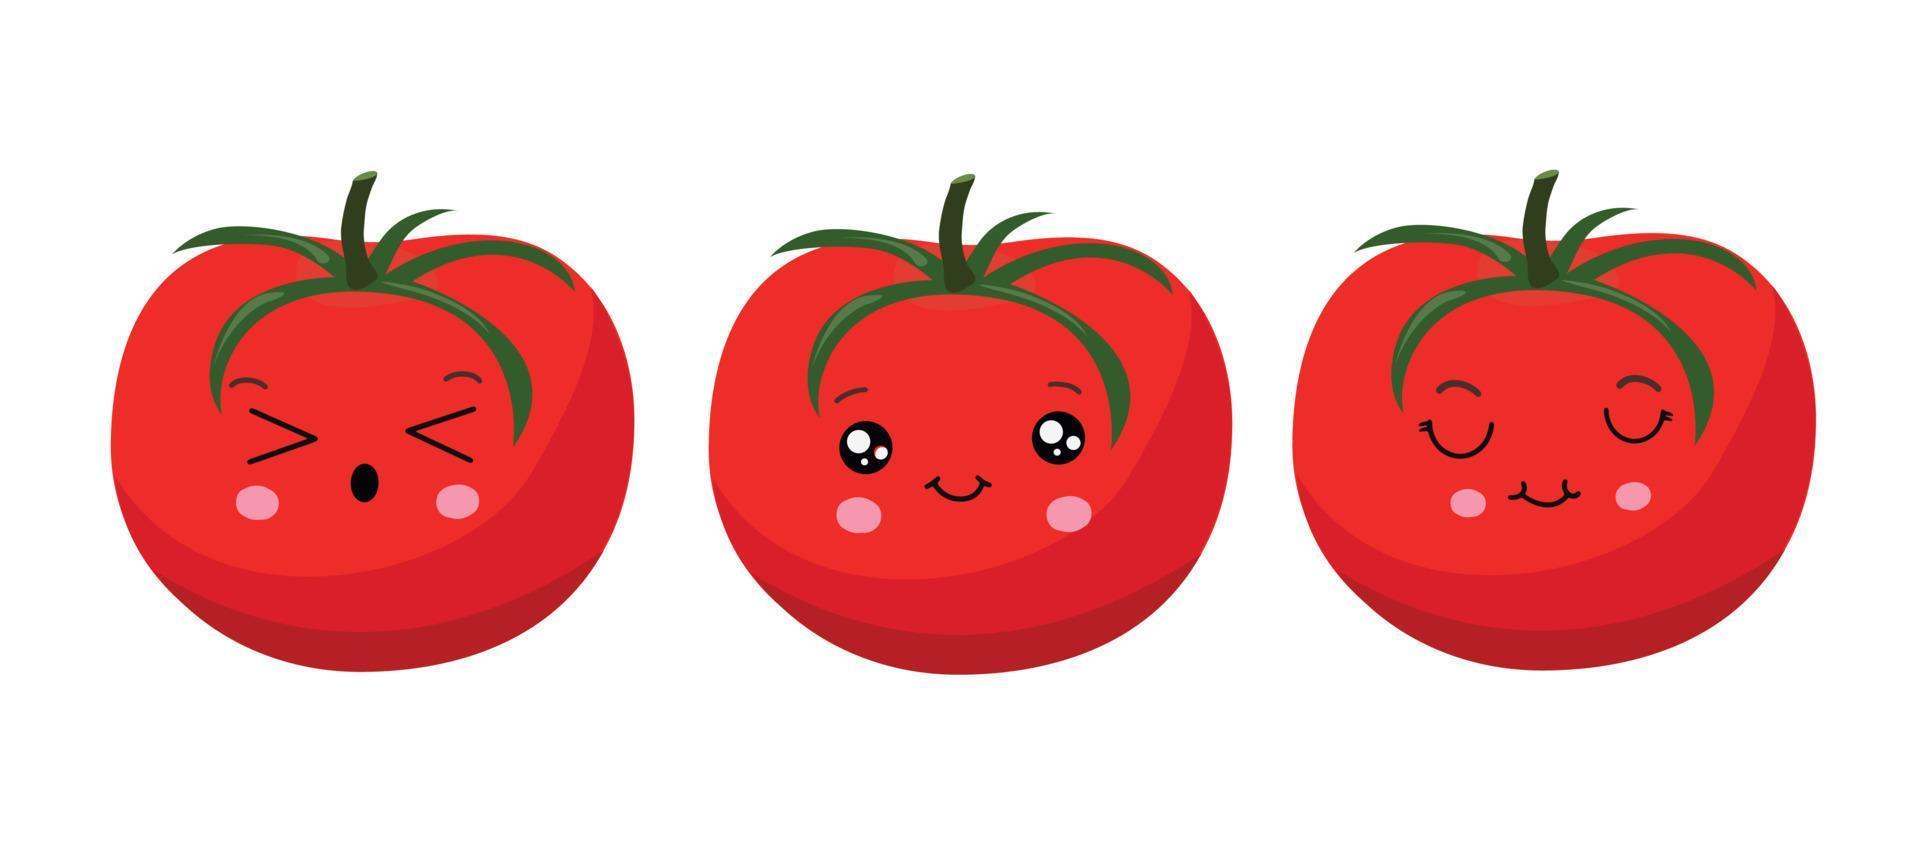 rood tomaat in kawaii stijl. vector illustratie